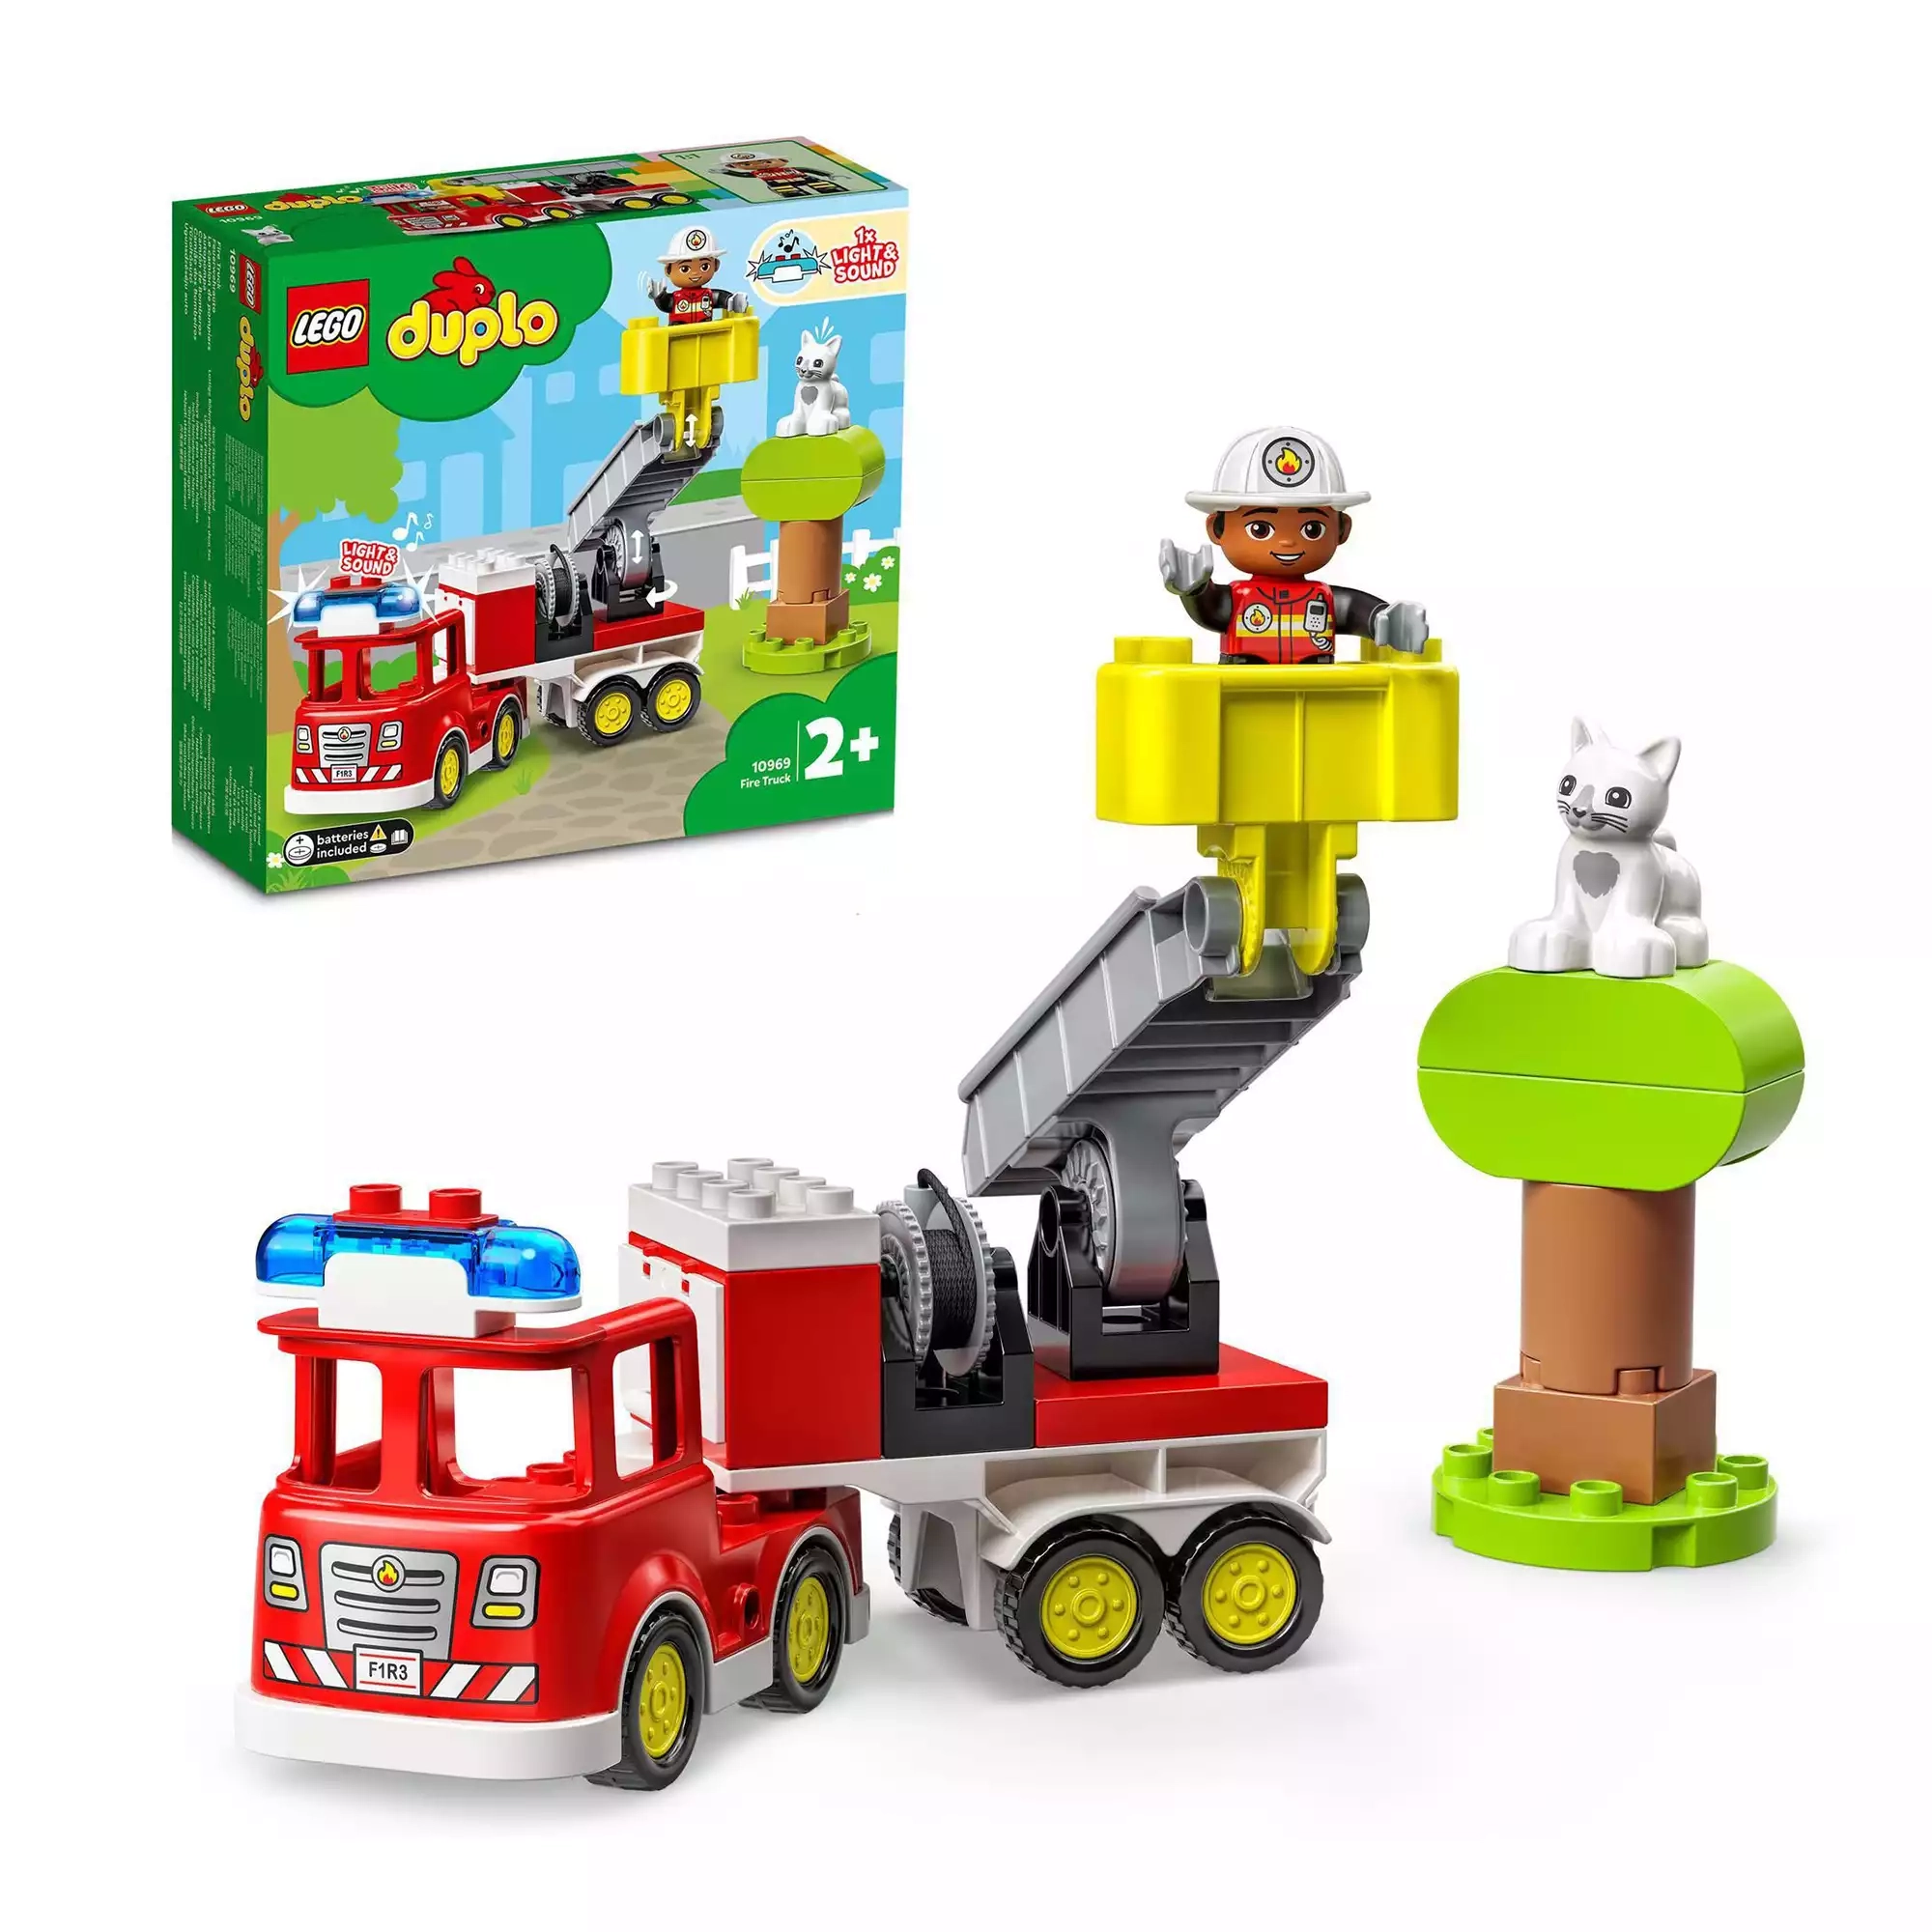 10969 Feuerwehrauto LEGO duplo 2000582874103 1